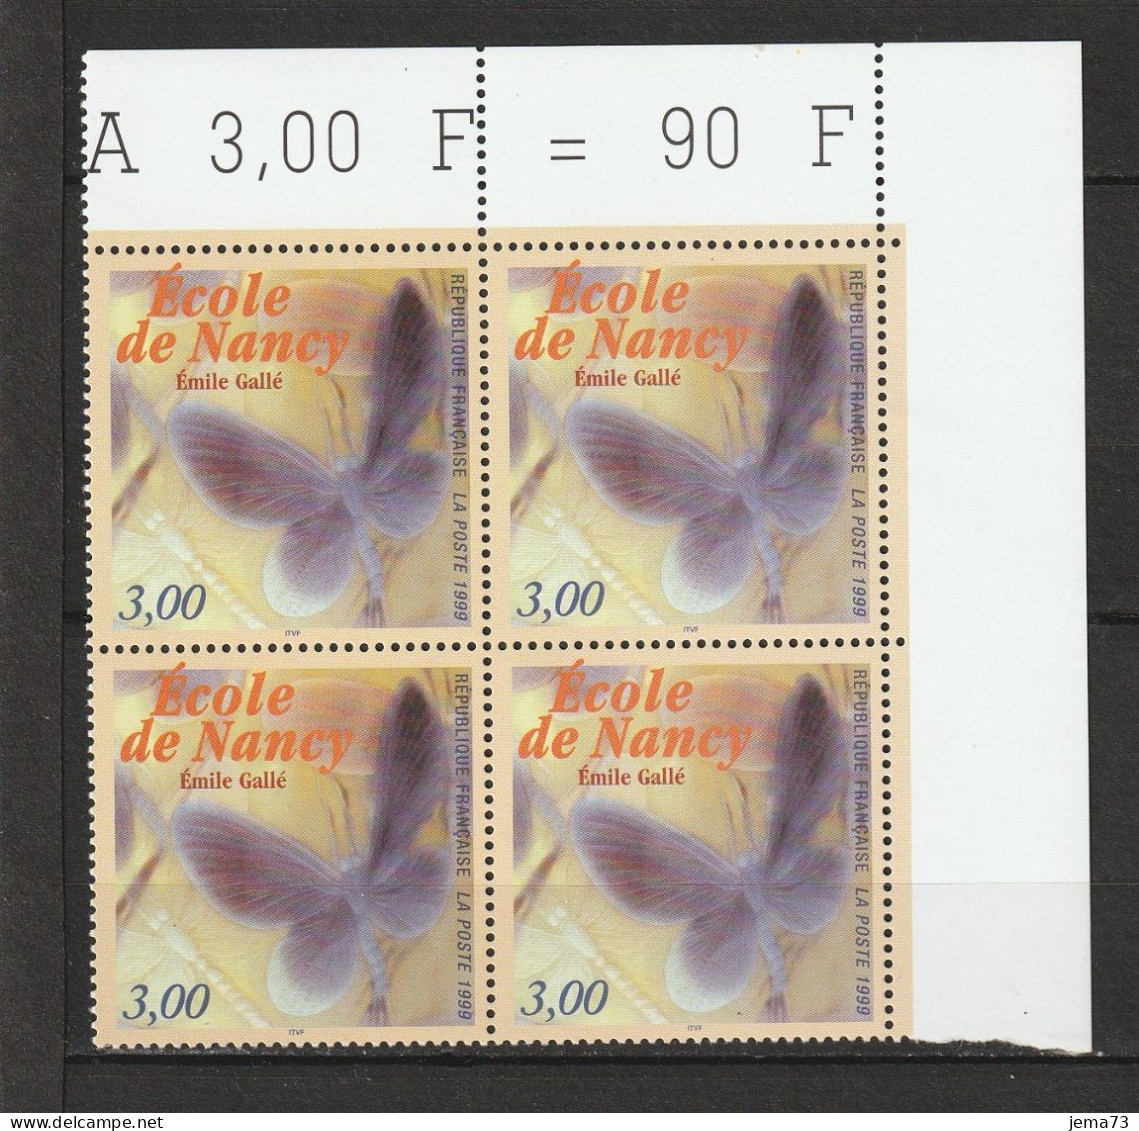 N° 3246 Cinquantenaire De L'Ecole De Nancy: Beau Bloc De 4 Timbres Neuf Impeccable - Unused Stamps